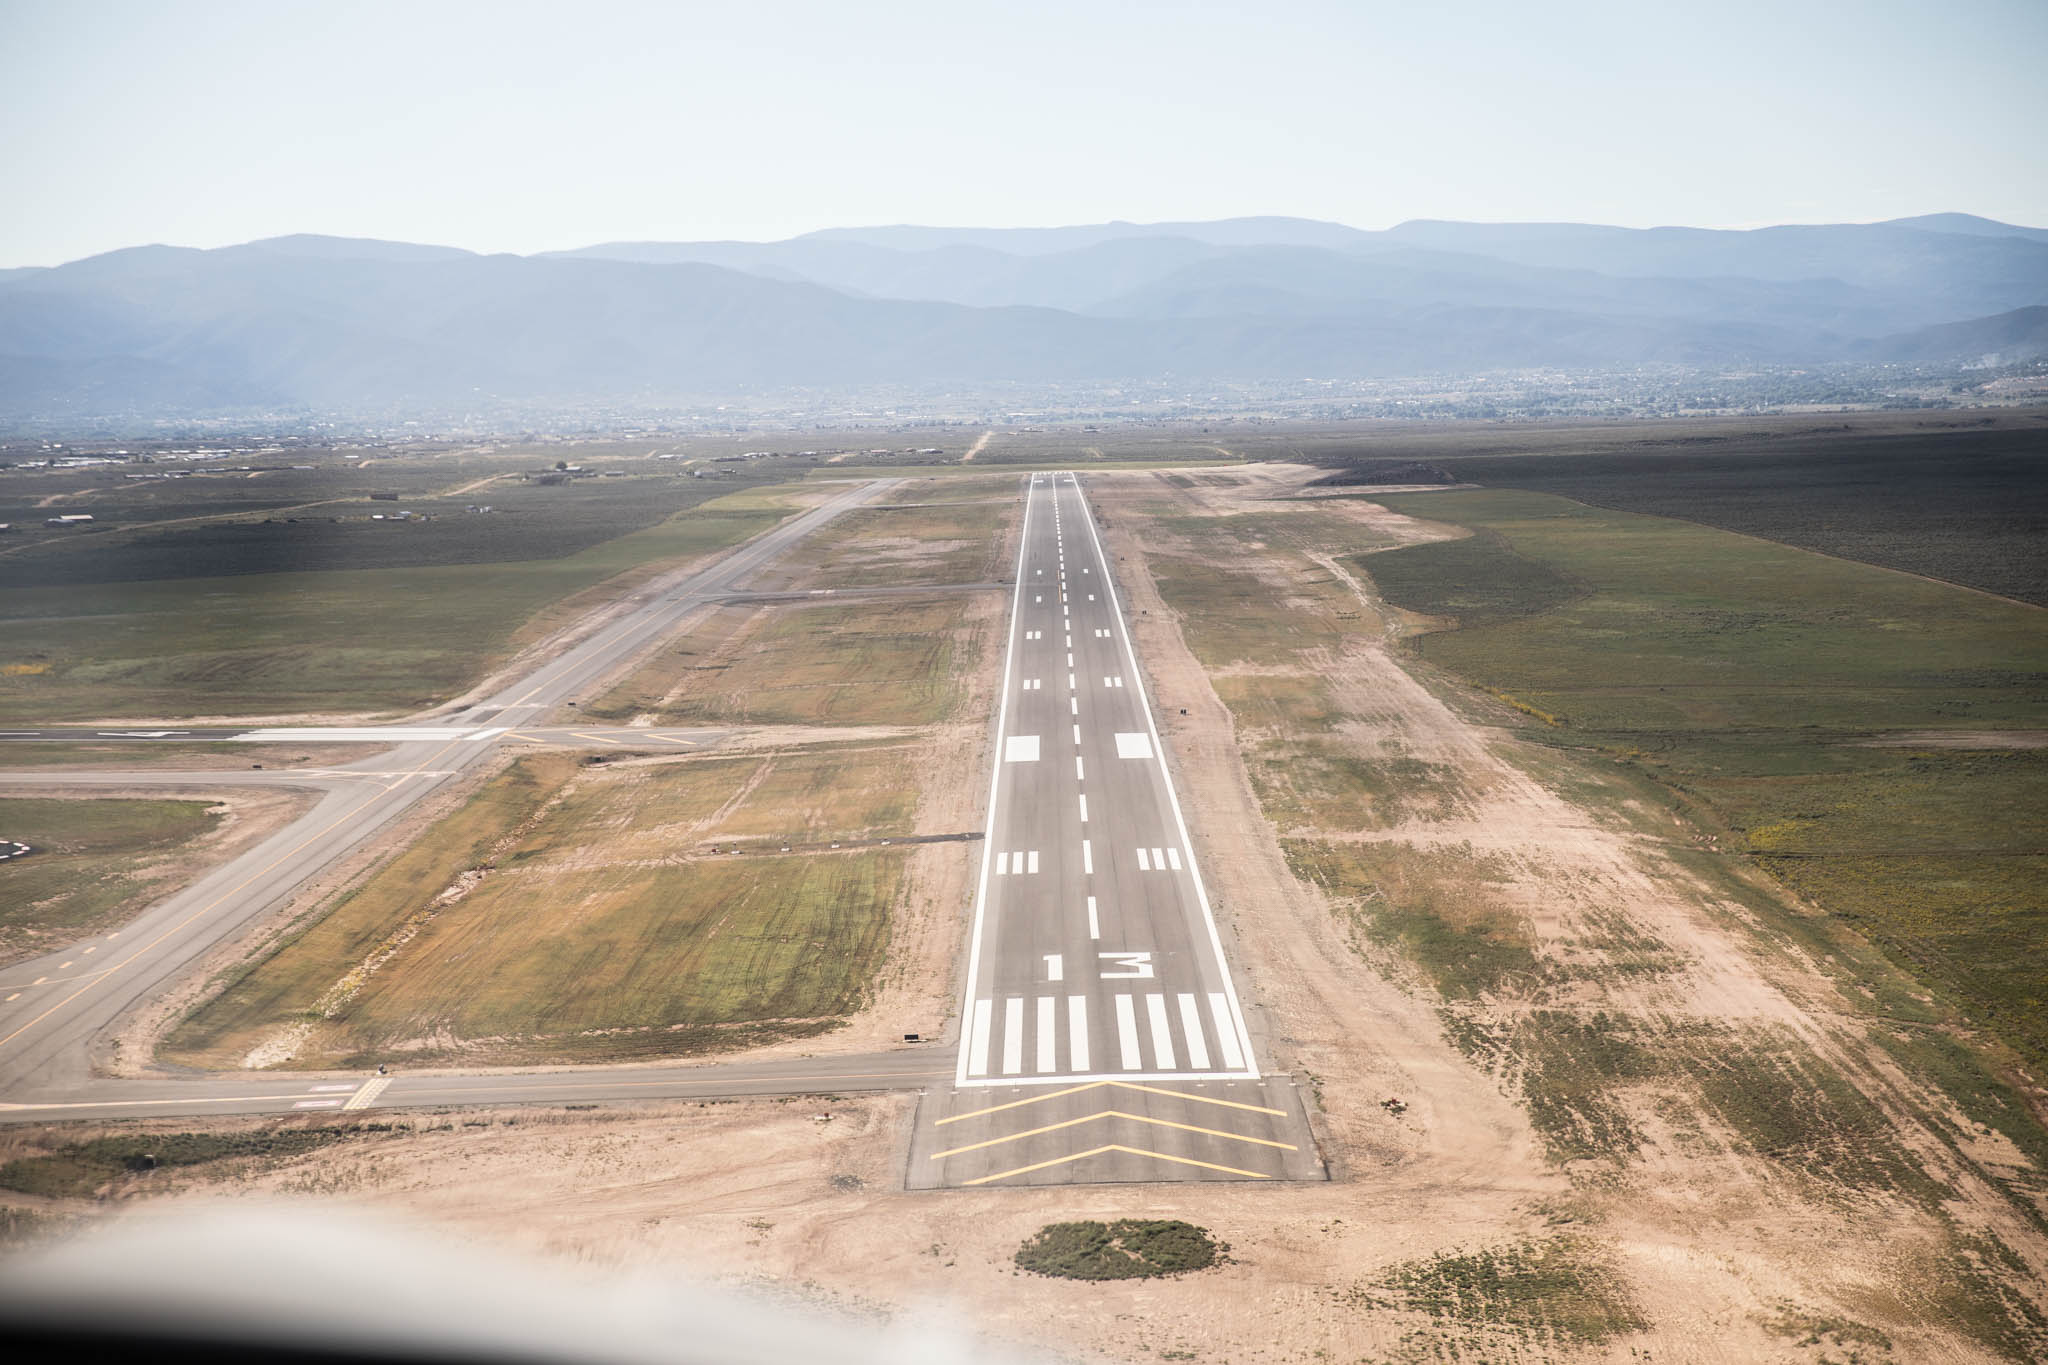 Taos Regional Airport